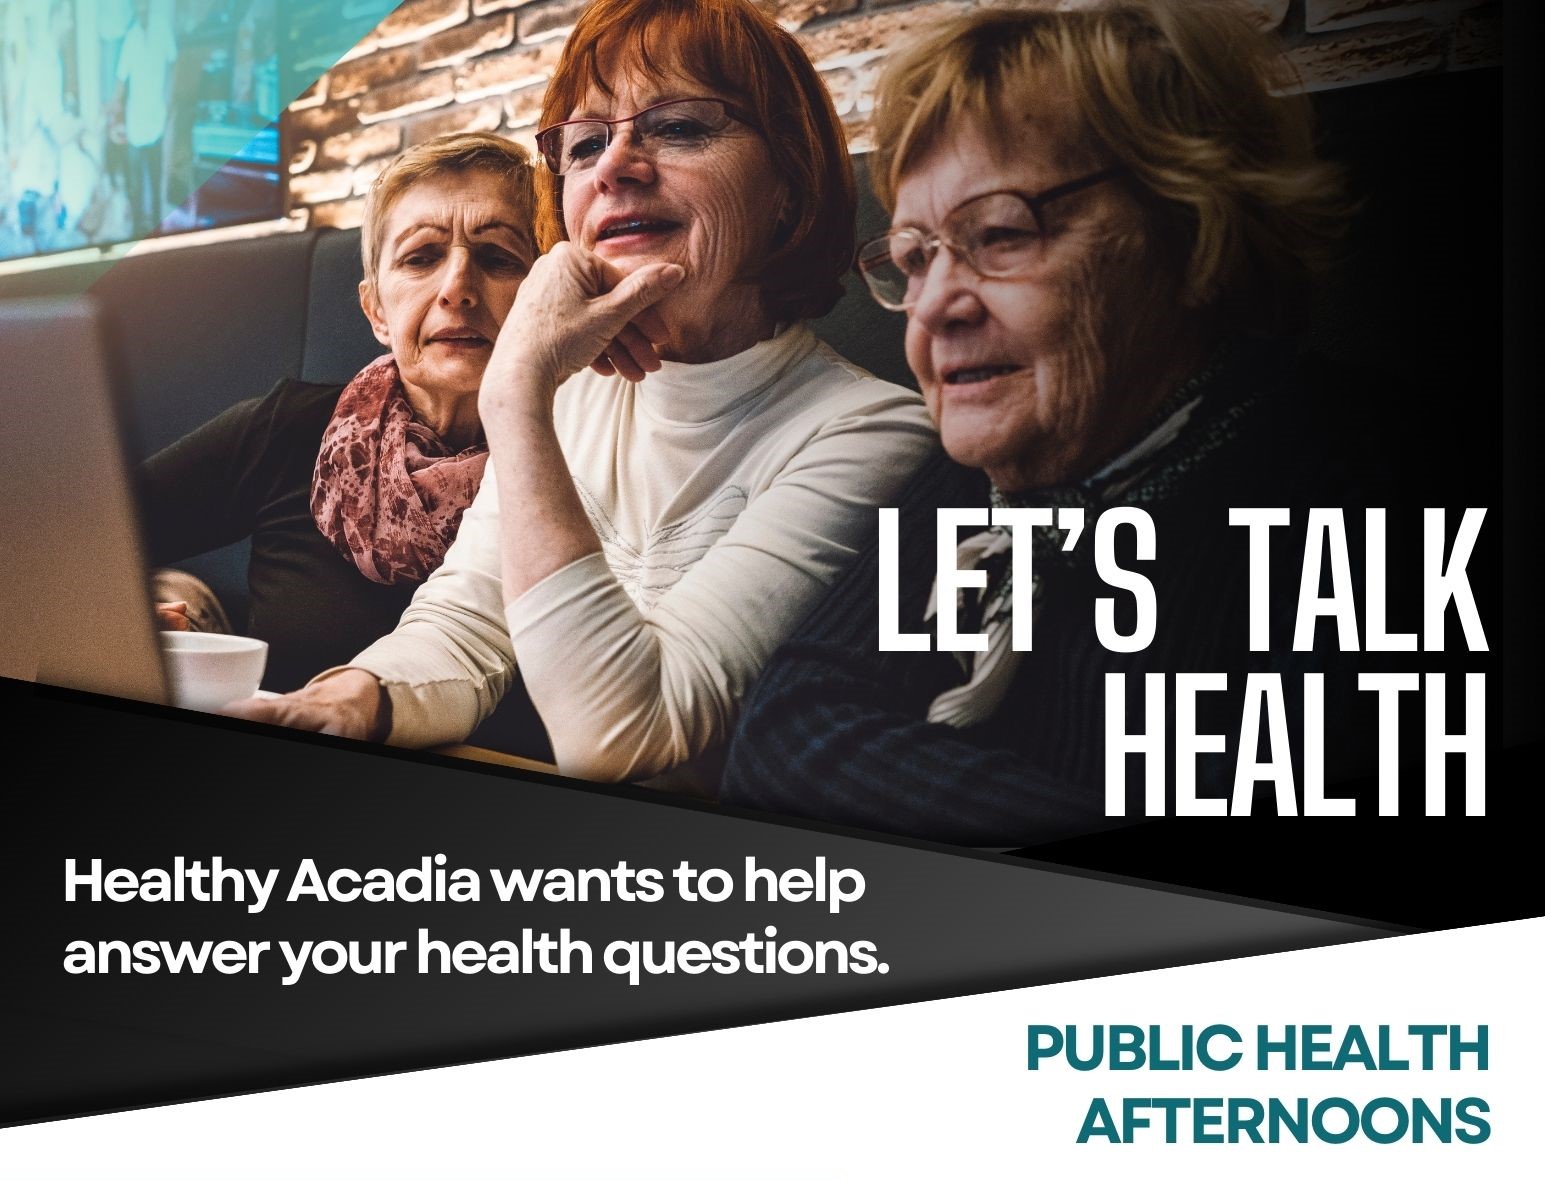 Let's Talk Health with Healthy Acadia